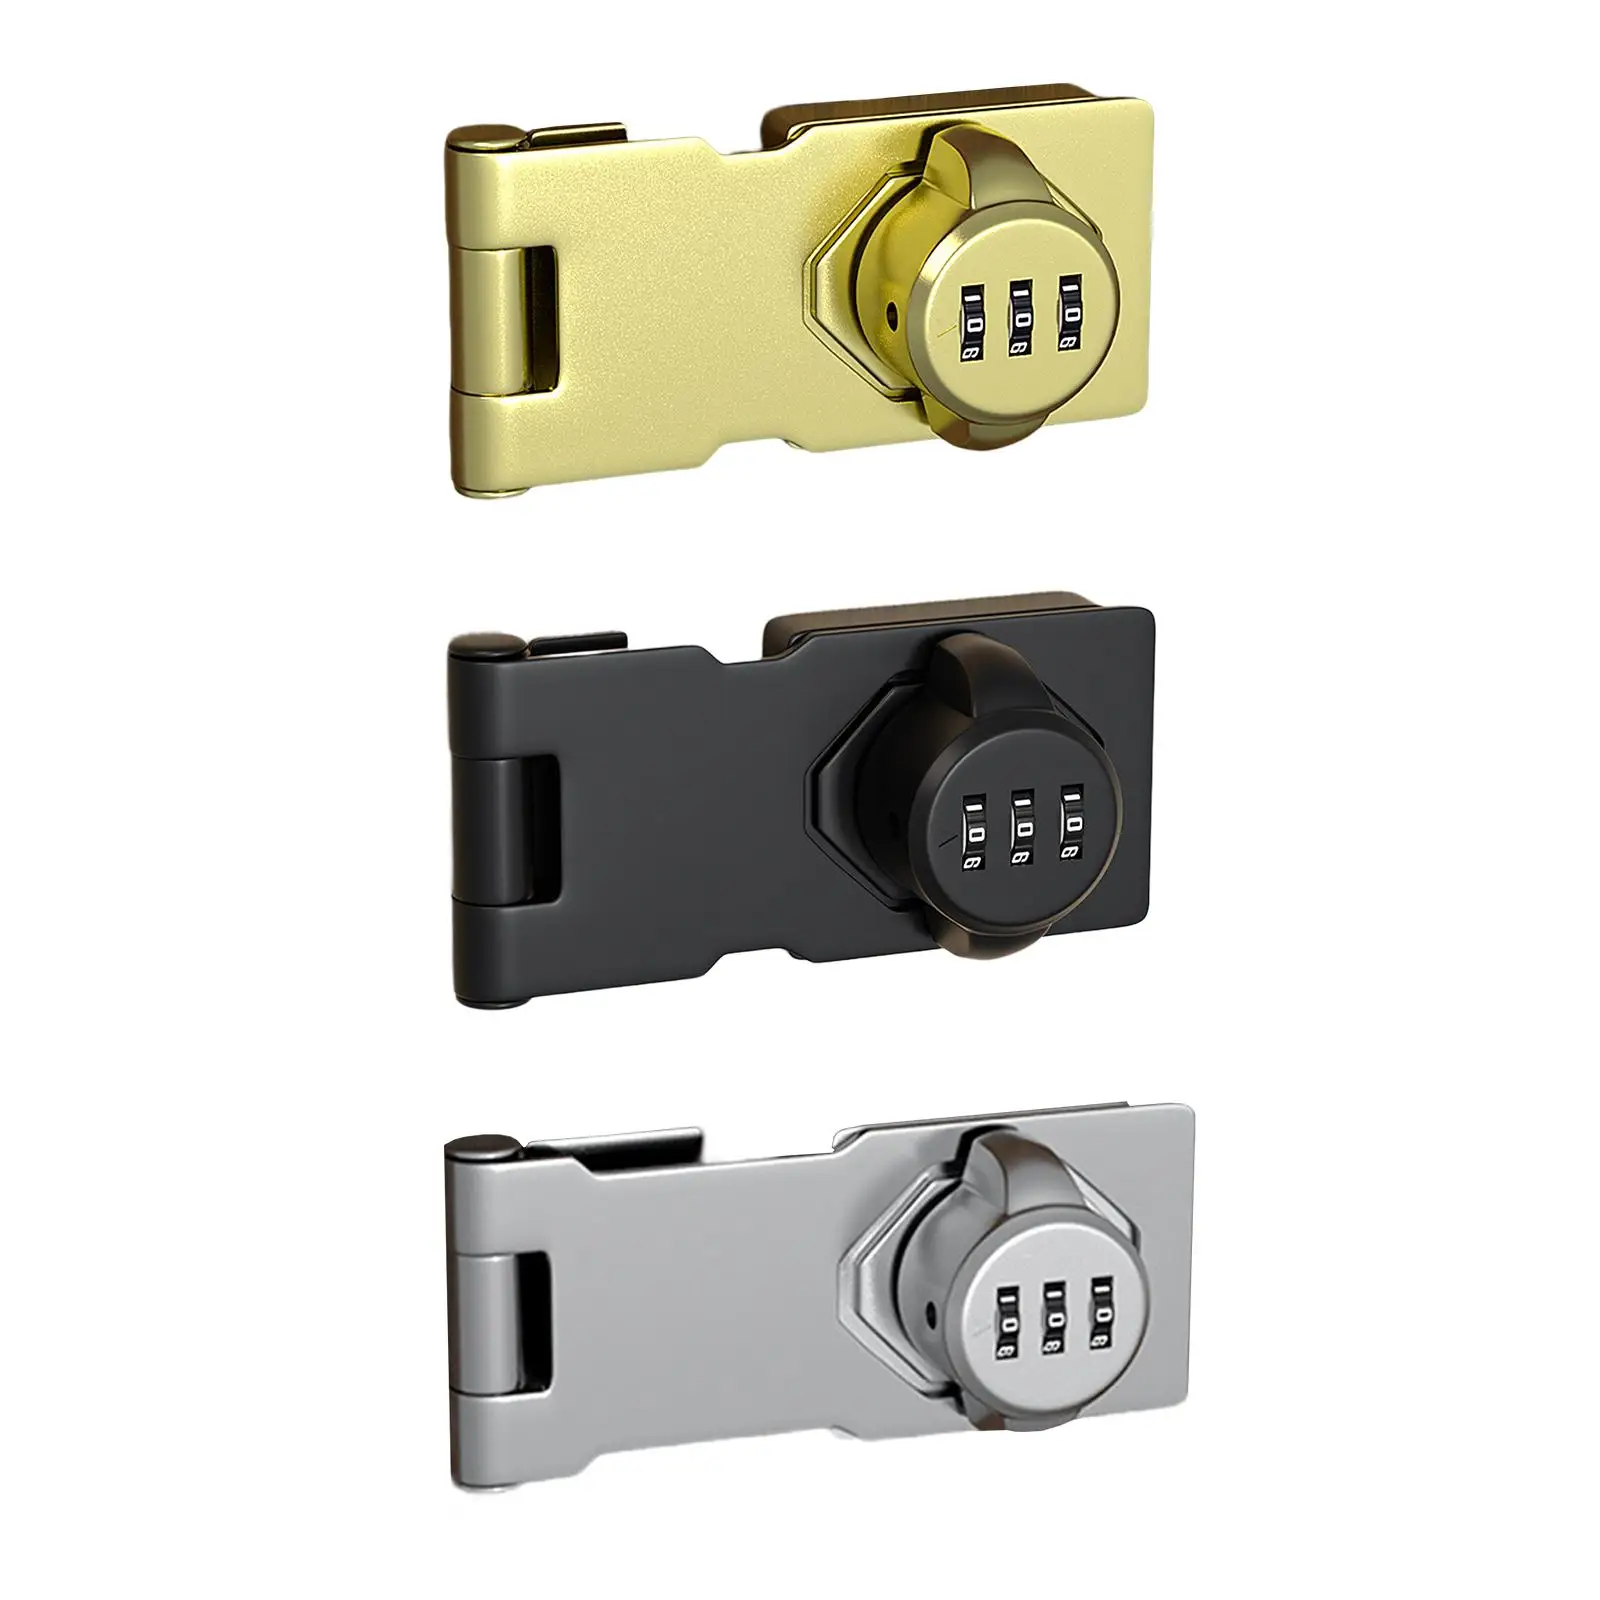 Drawer, Mechanical password door lock with screws, Refrigerator combination cam,